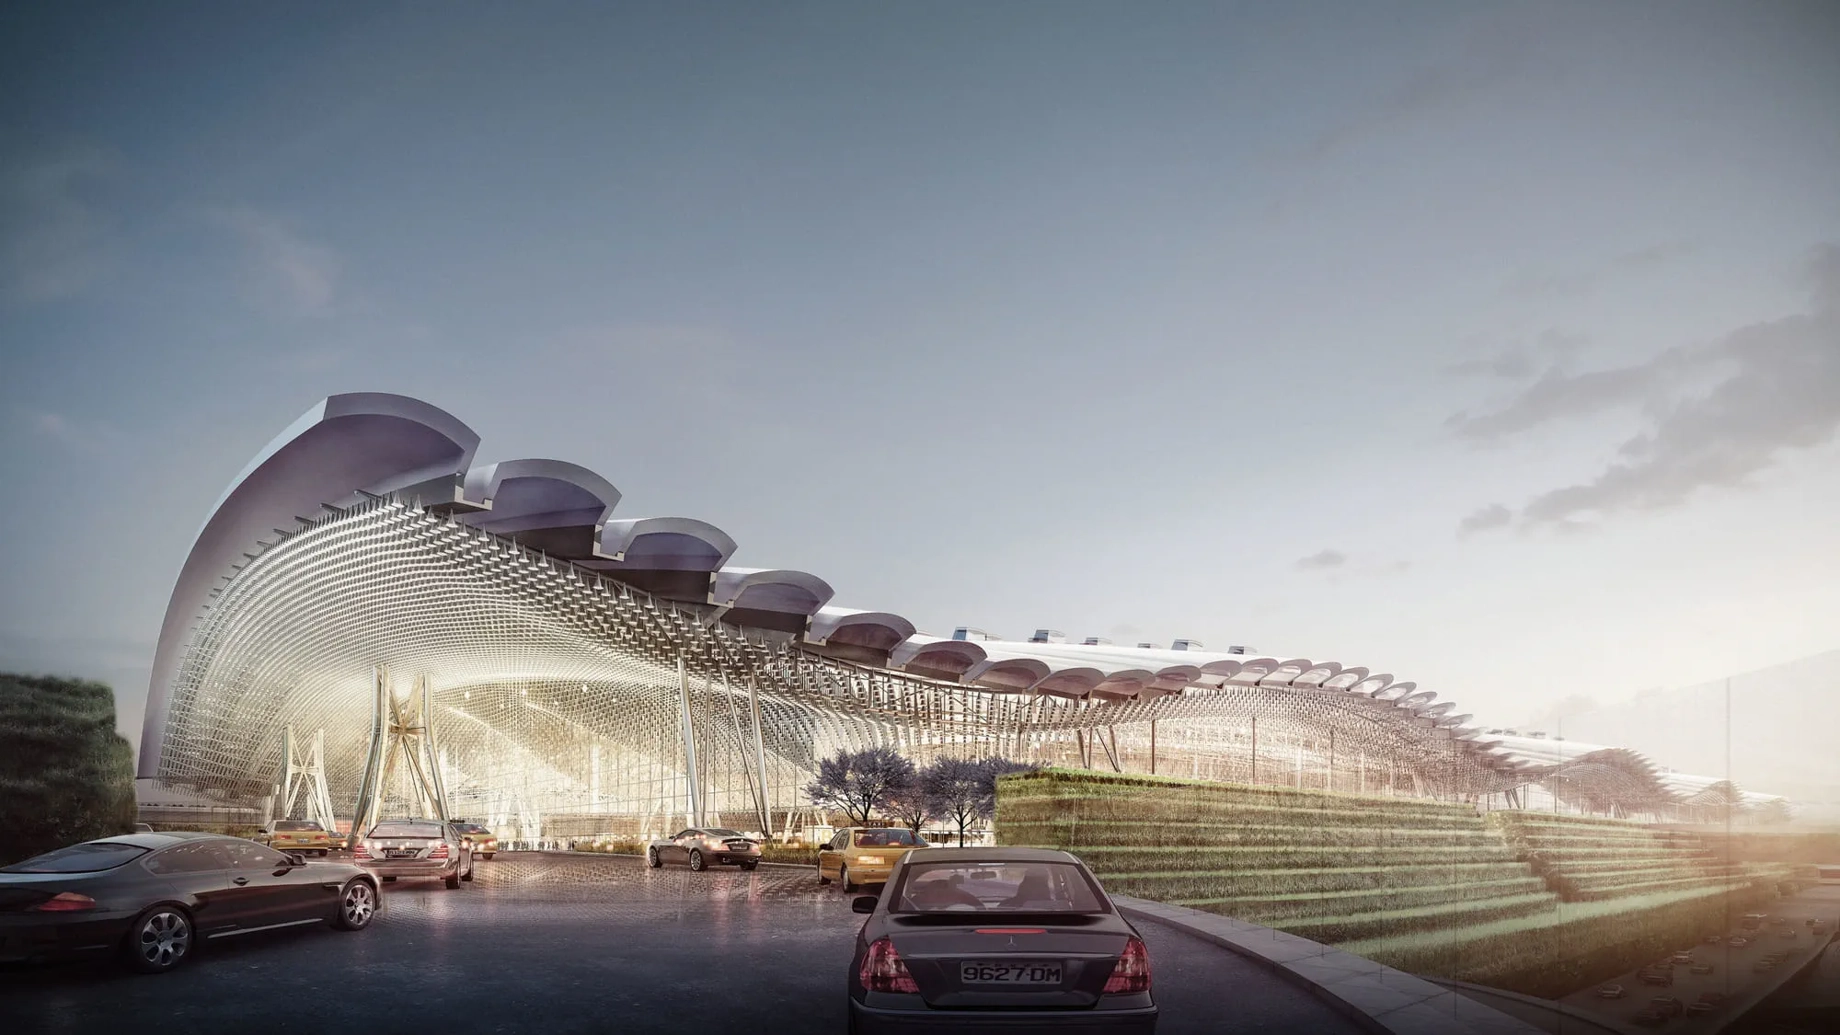 A CGI of the exterior of Taoyaun International Airport Terminal 3